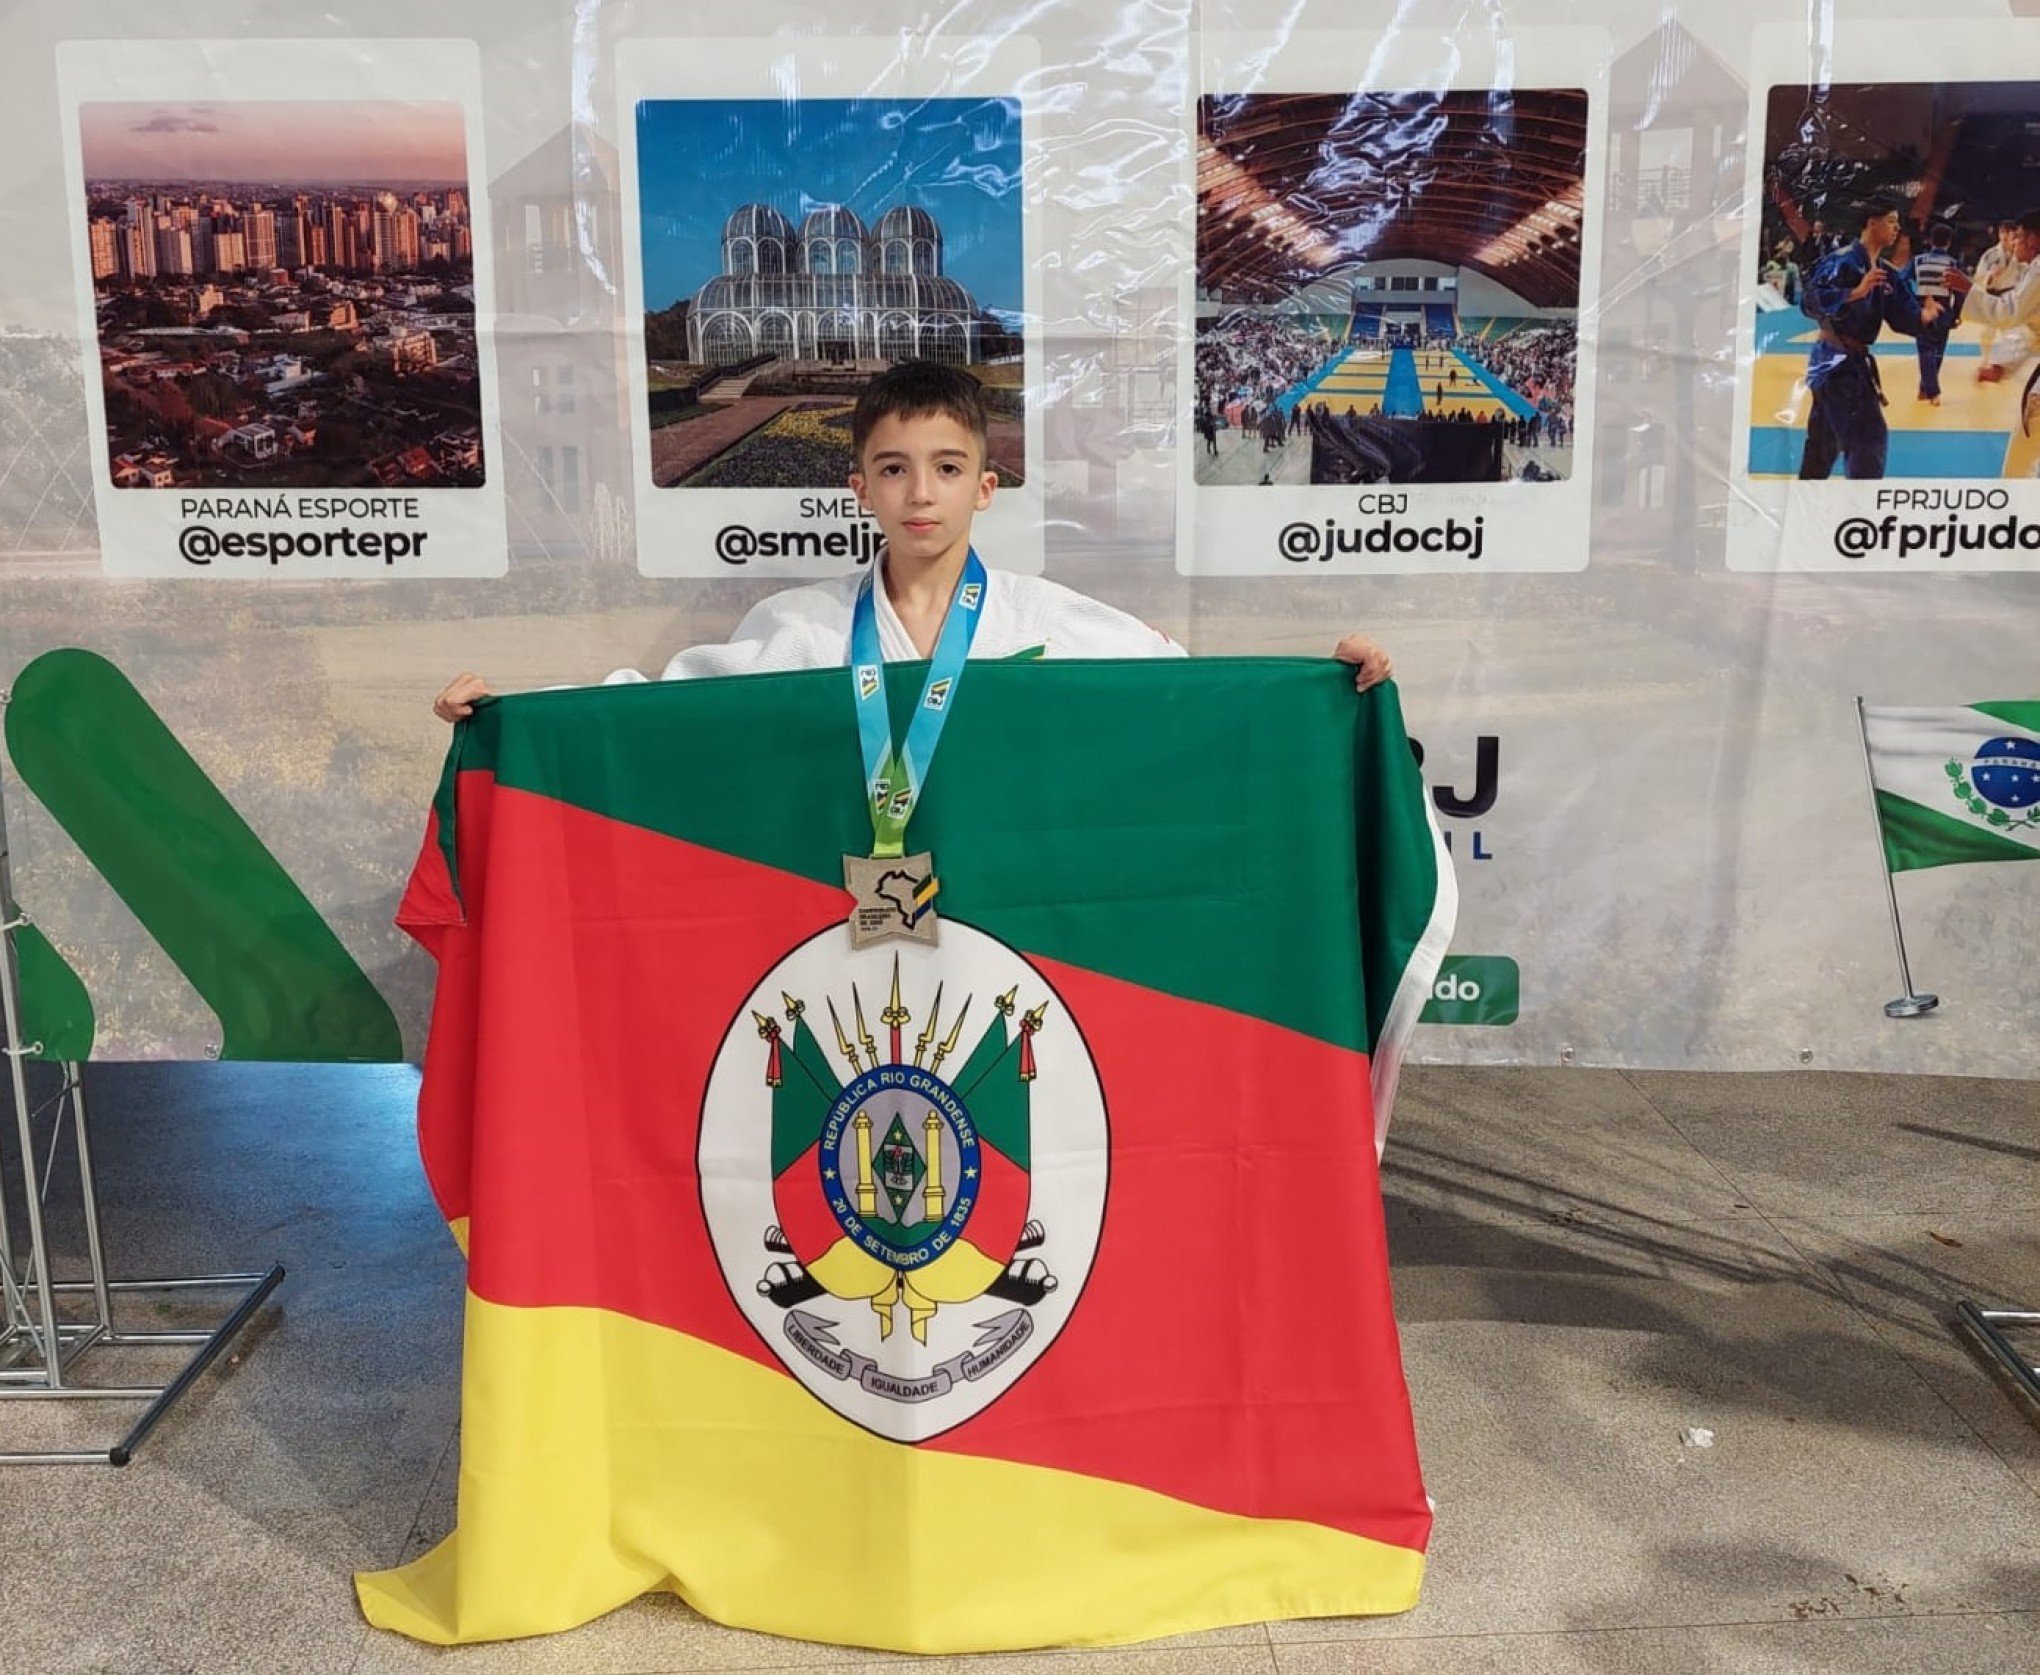 Kauã Soares conquista medalha de prata no Campeonato Brasileiro de Judô